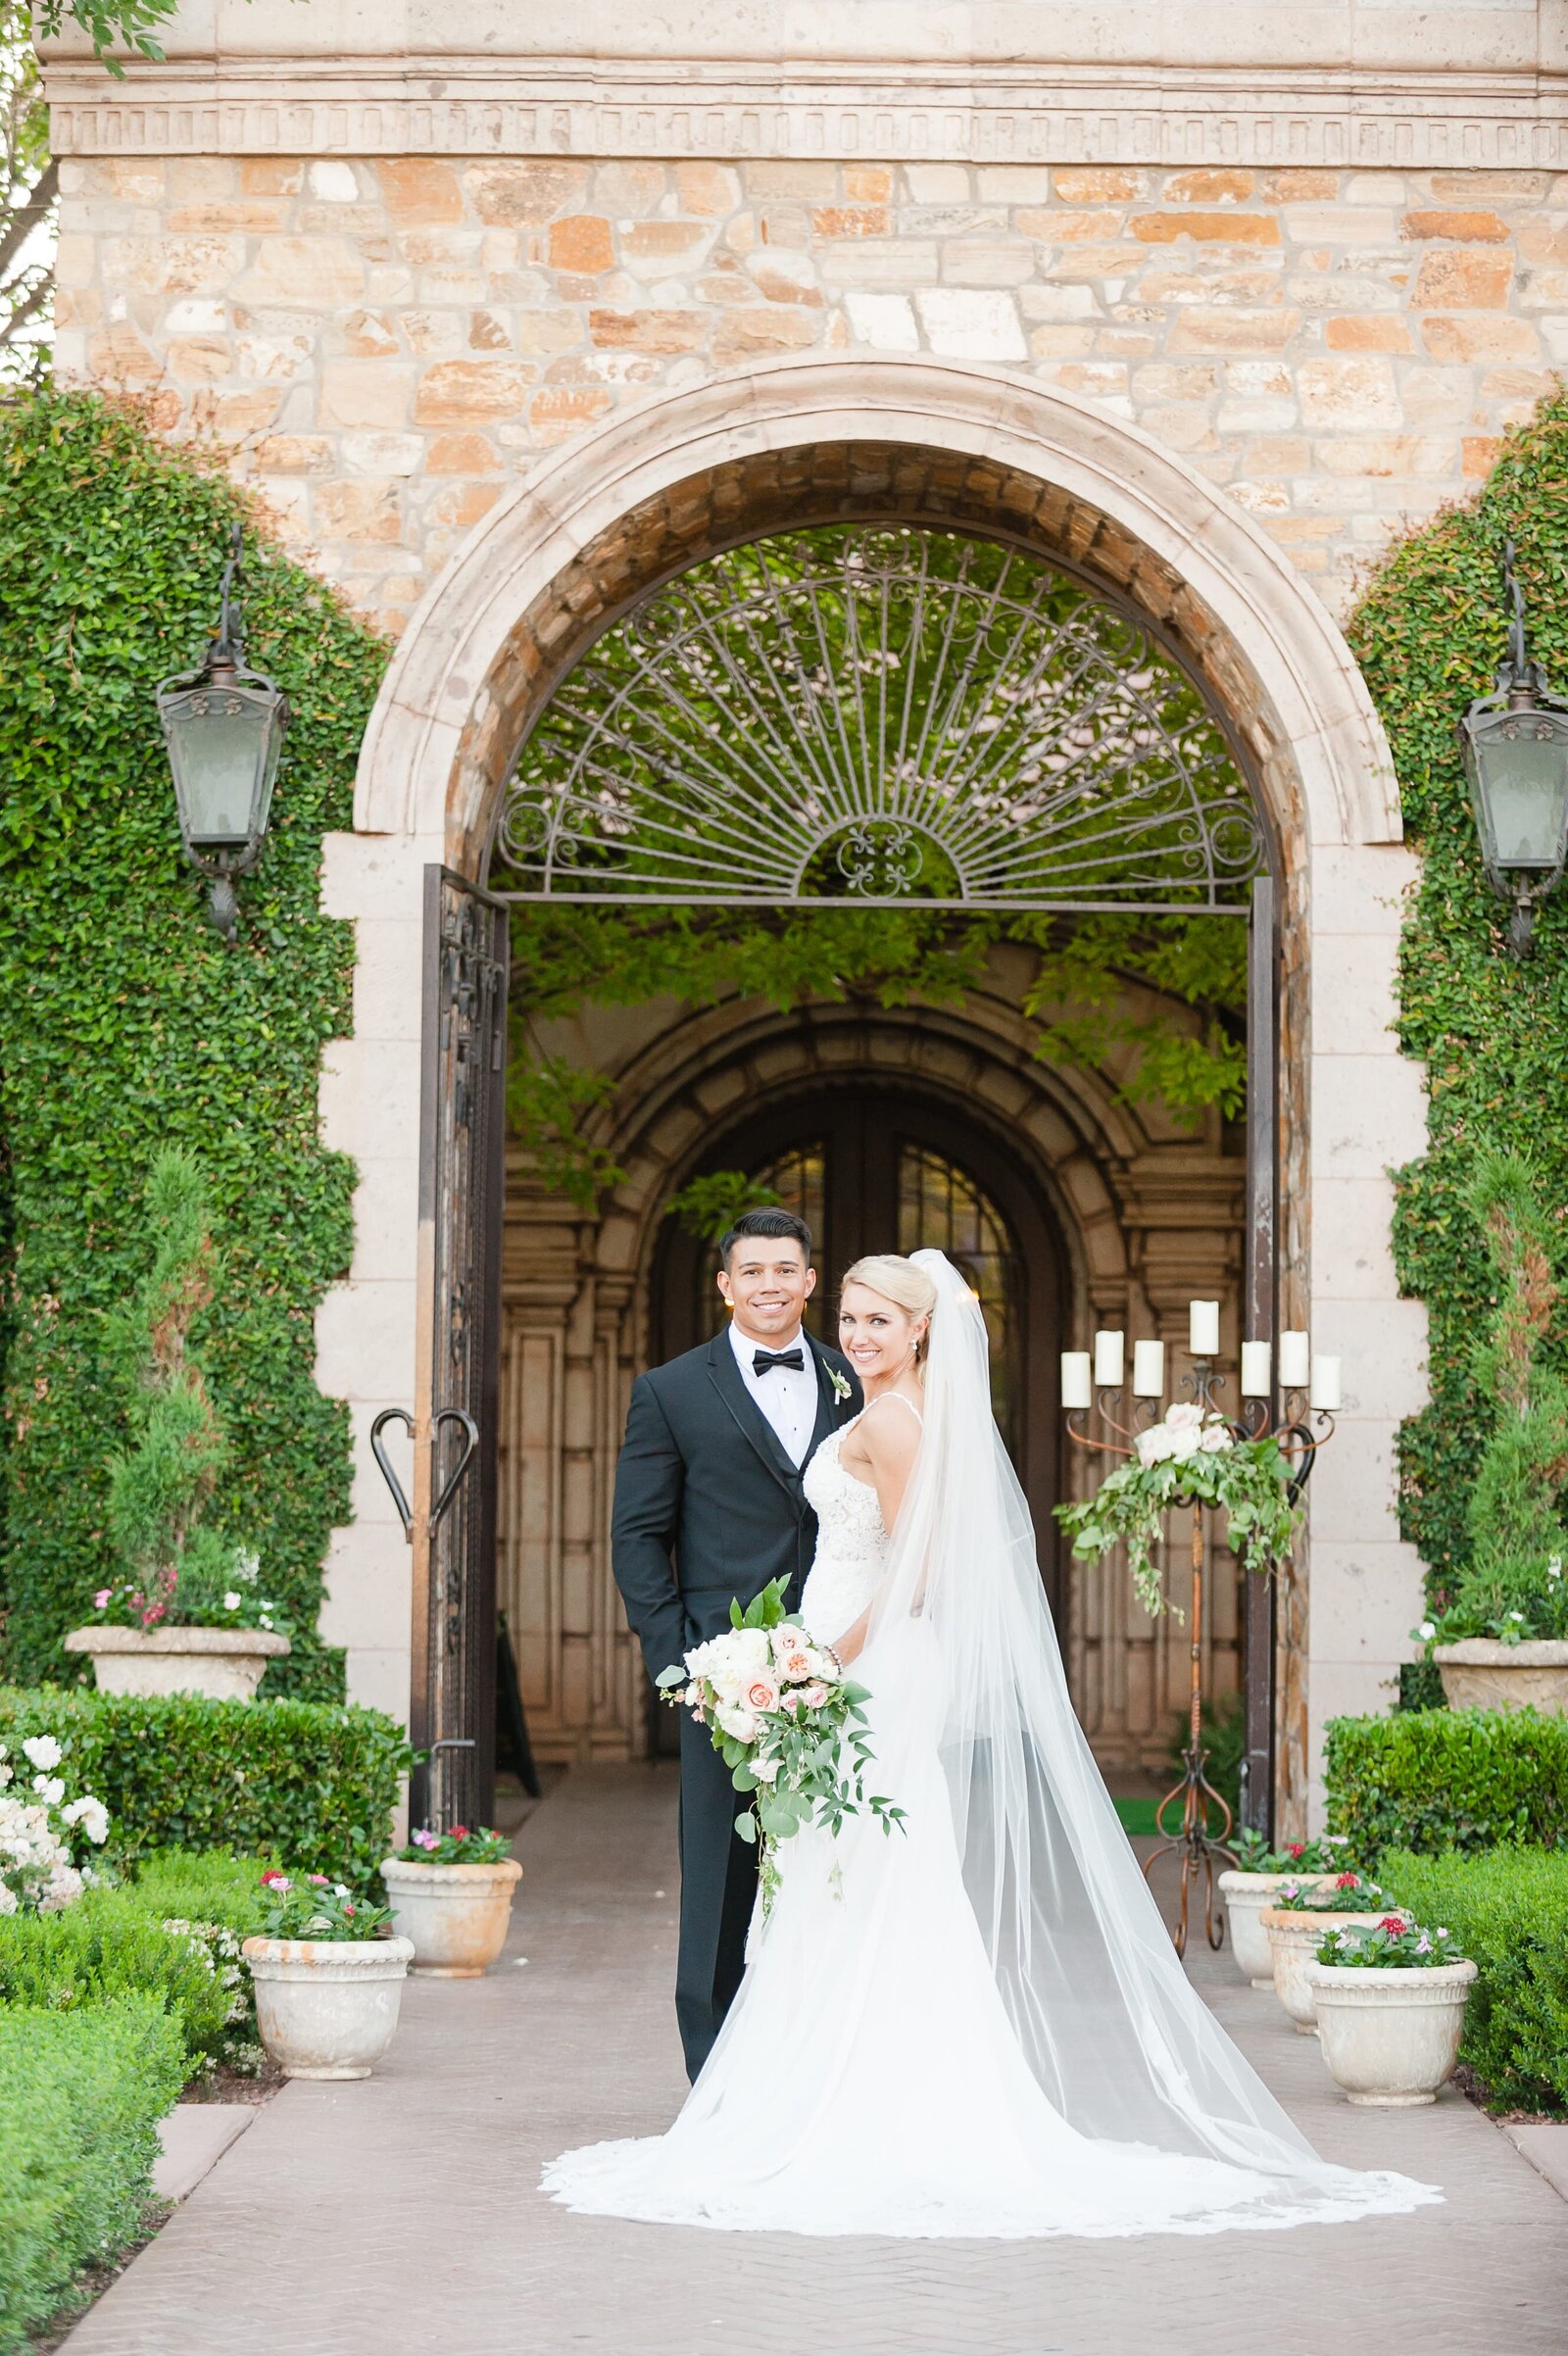 Villa Siena bride and groom photo.